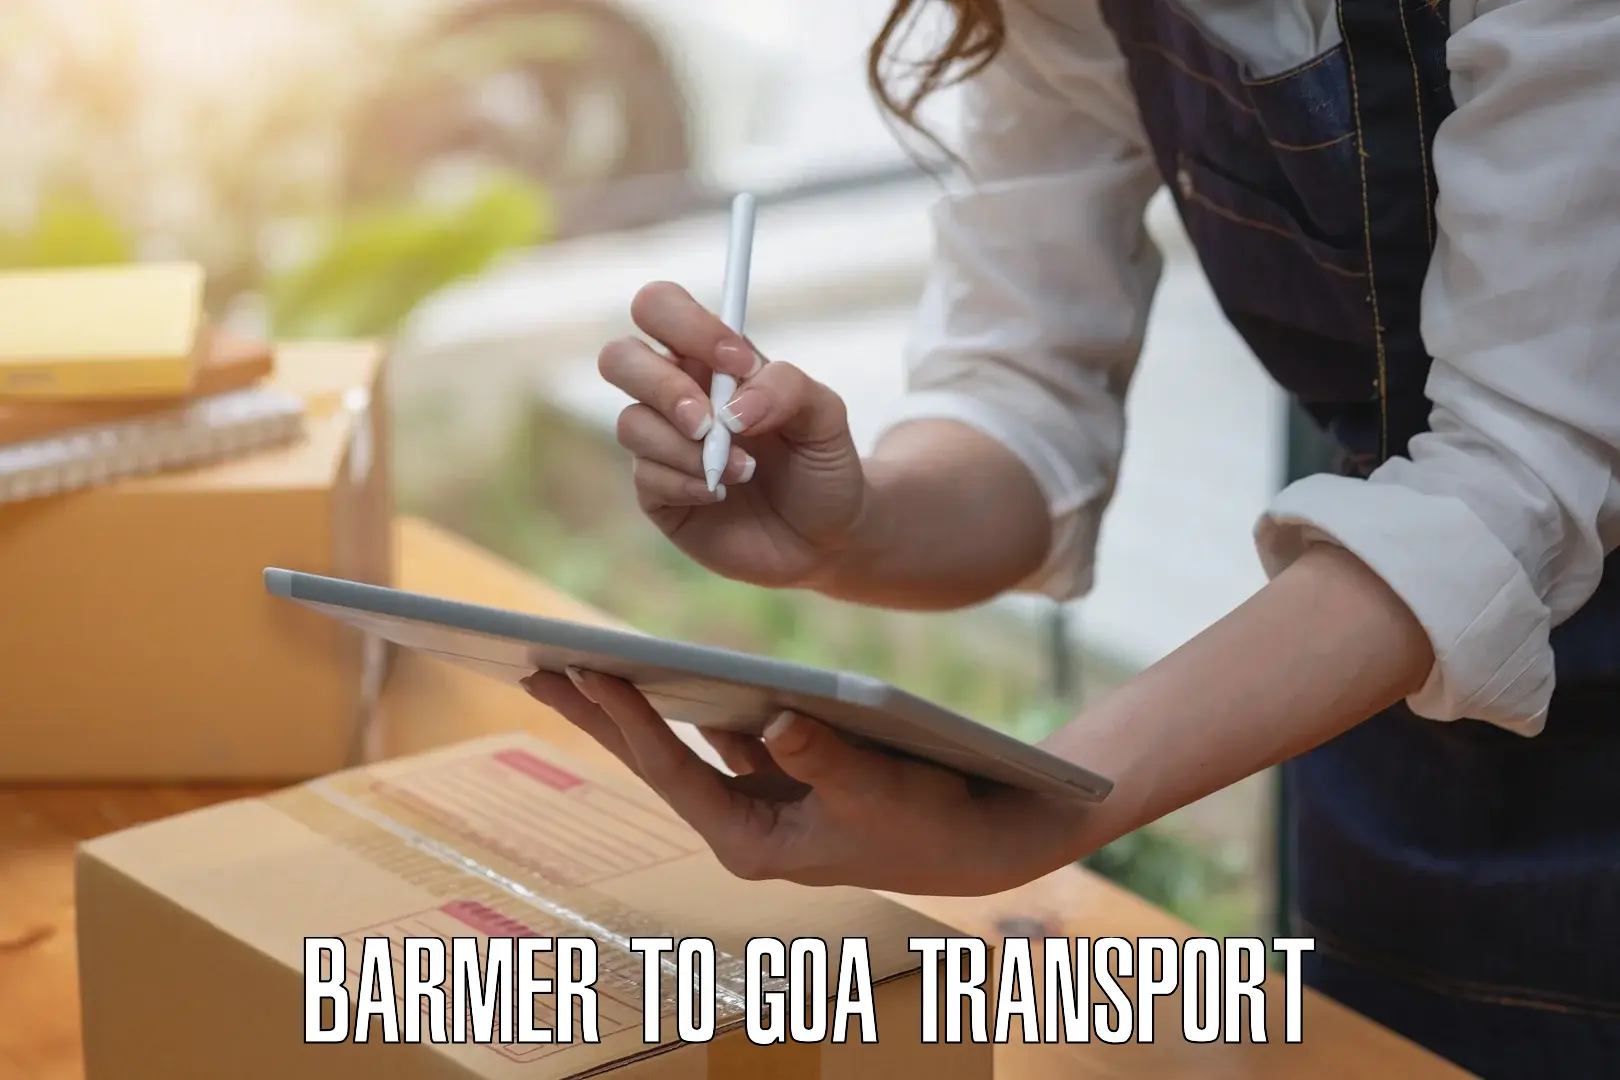 Bike shipping service Barmer to IIT Goa